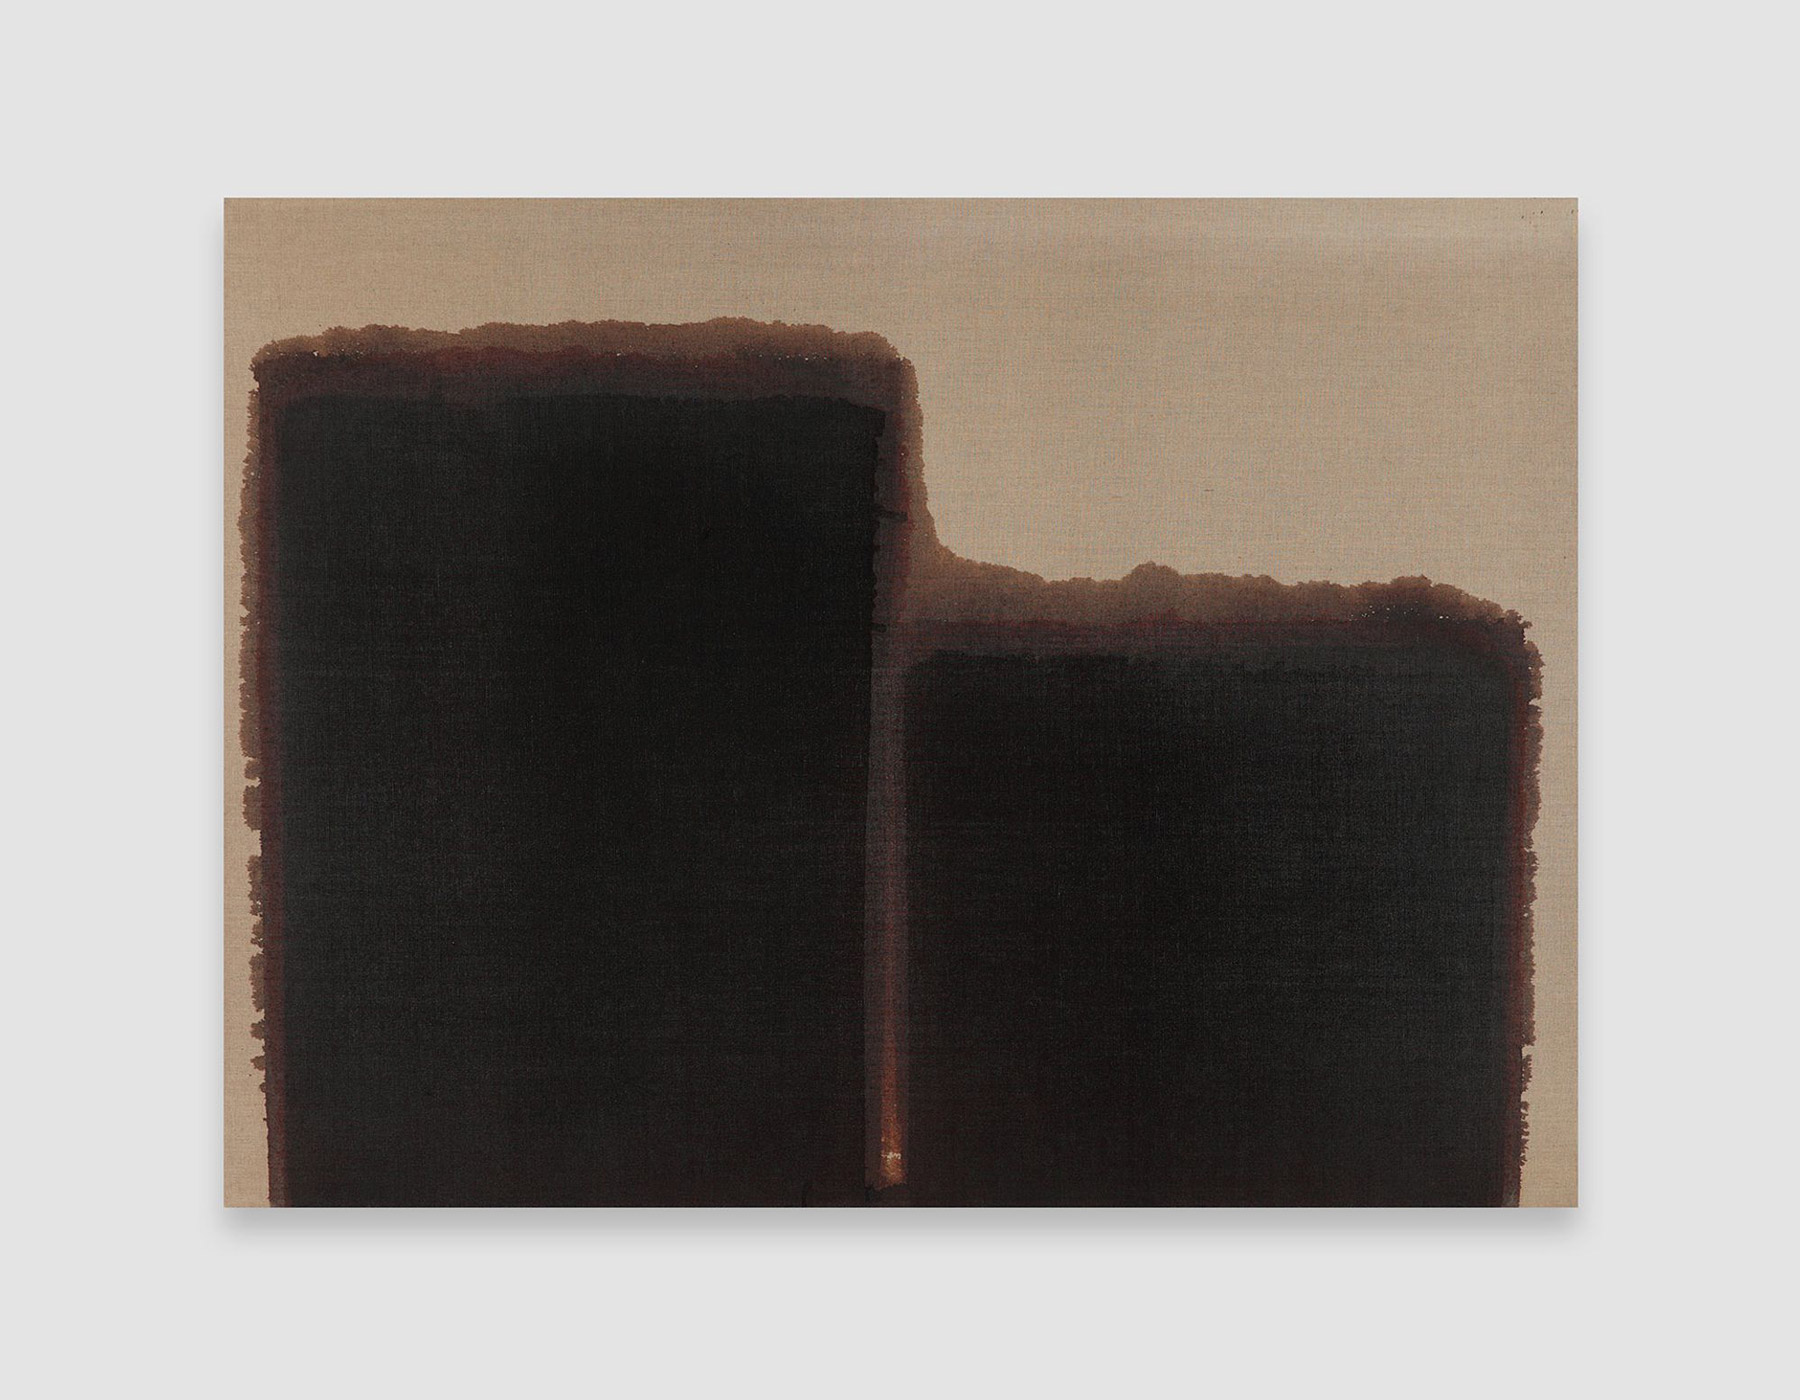 Yun Hyong-keun, Burnt Umber & Ultramarine , 1991, Oil on linen, 97.5 x 130.5 cm © The Artist, Image Courtesy David Zwirner